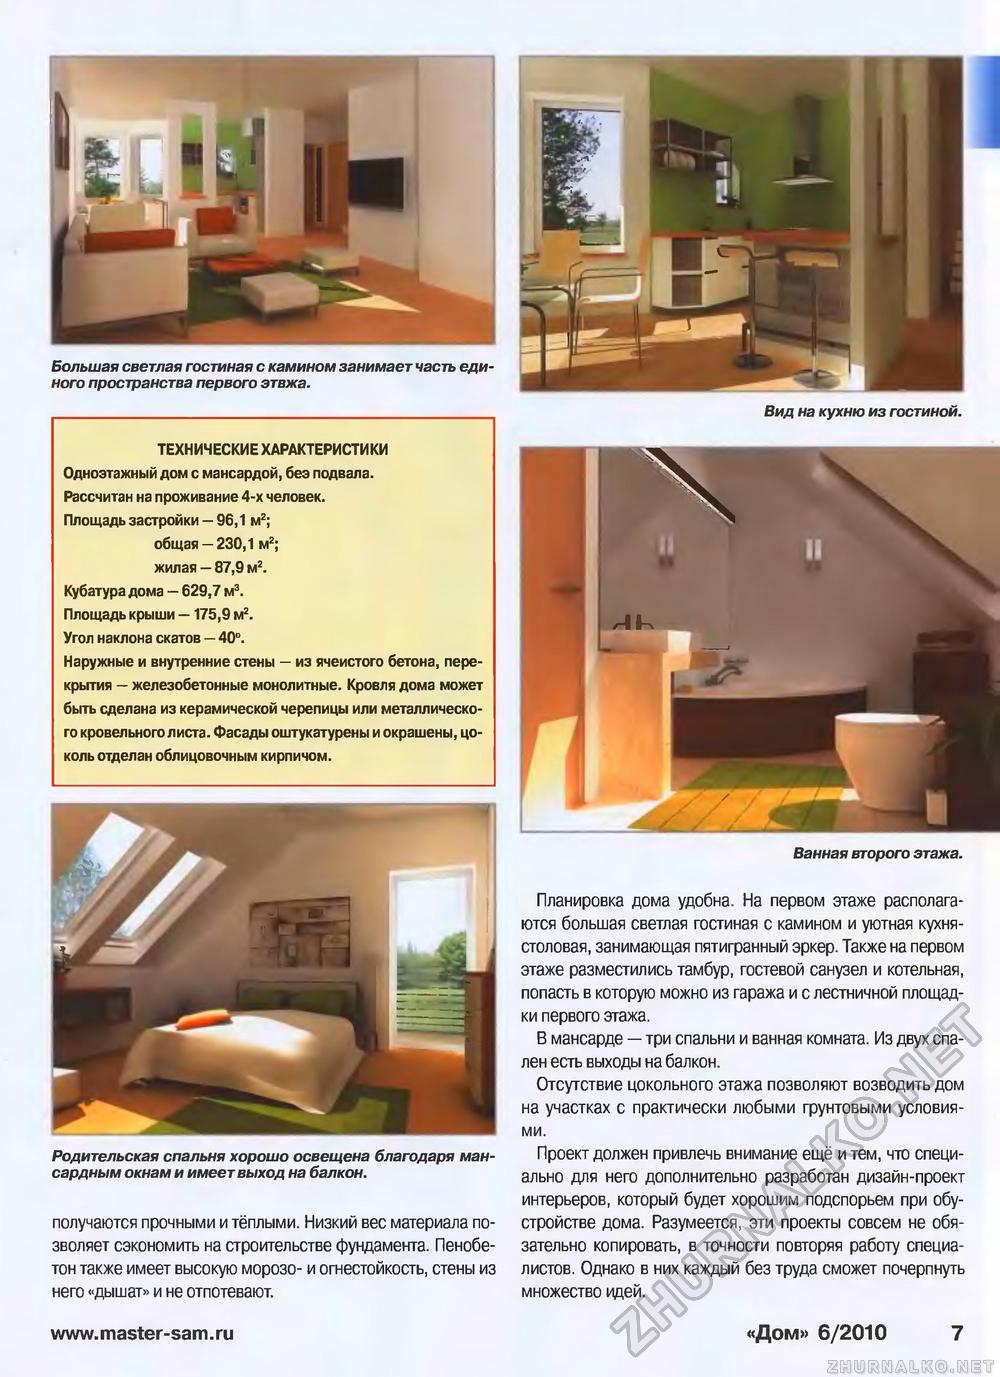 Дом 2010-06, страница 7